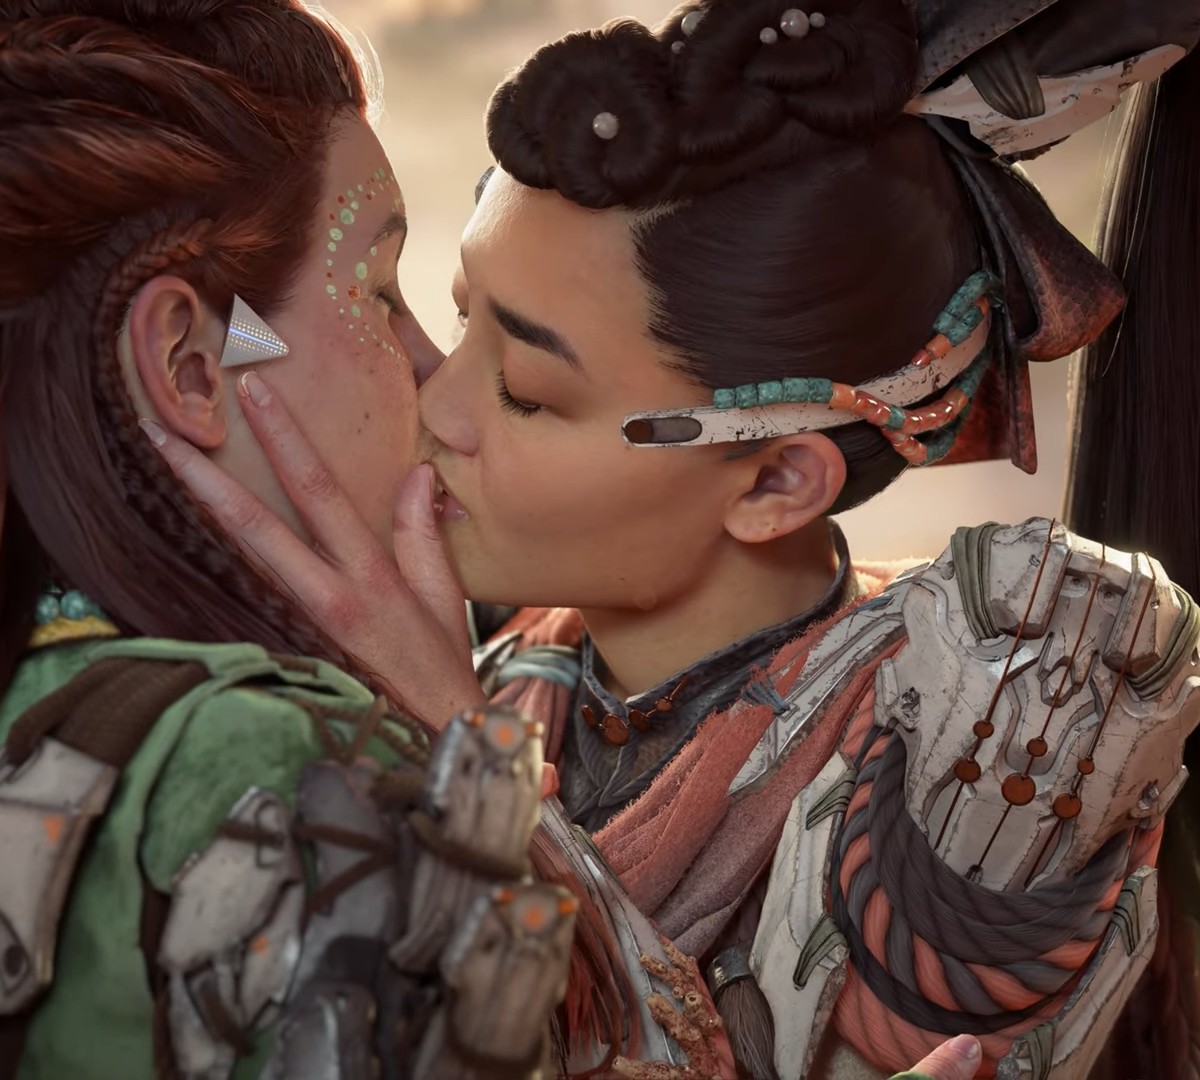 DLC de Horizon Forbidden West tem avaliações negativas por beijo entre  mulheres